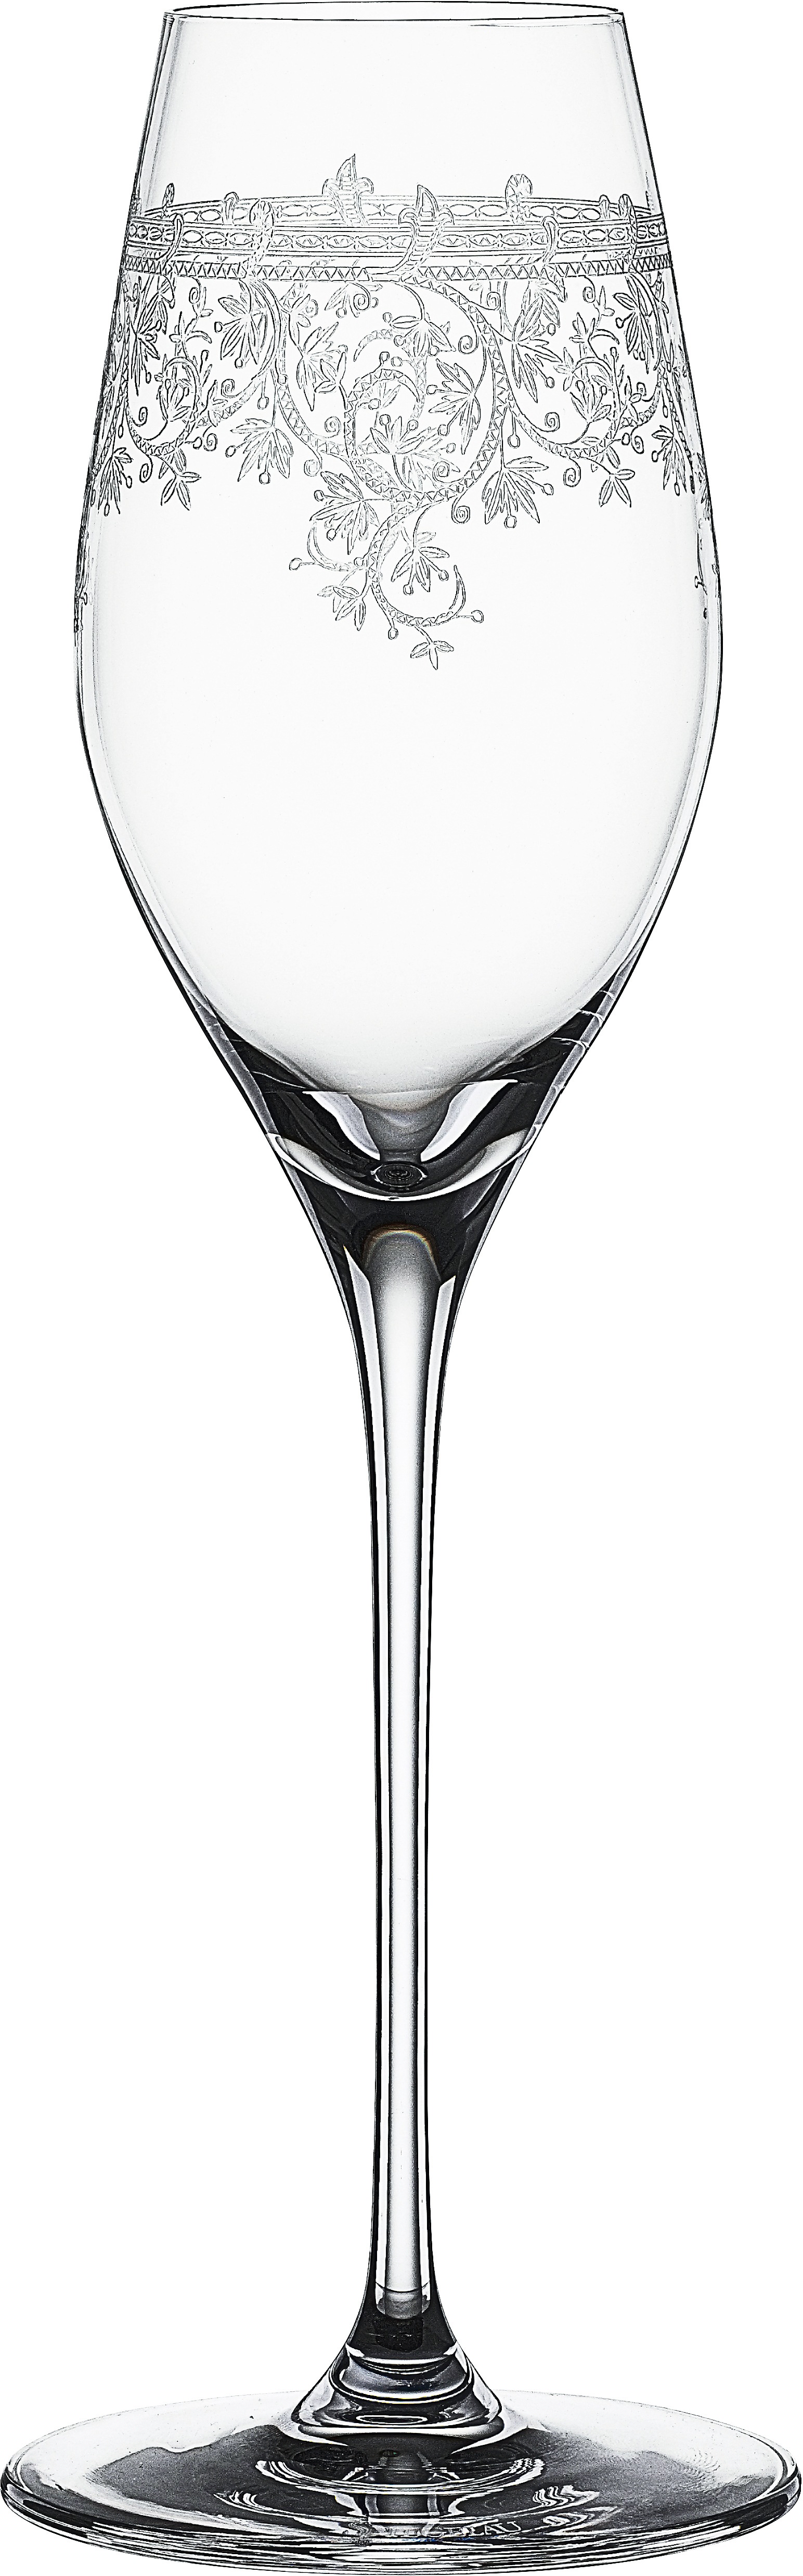 SPIEGELAU Champagnerglas Arabesque, (Set, 6 tlg., 6x Champagnergäser), 300 ml, 6-teilig farblos Kristallgläser Gläser Glaswaren Haushaltswaren